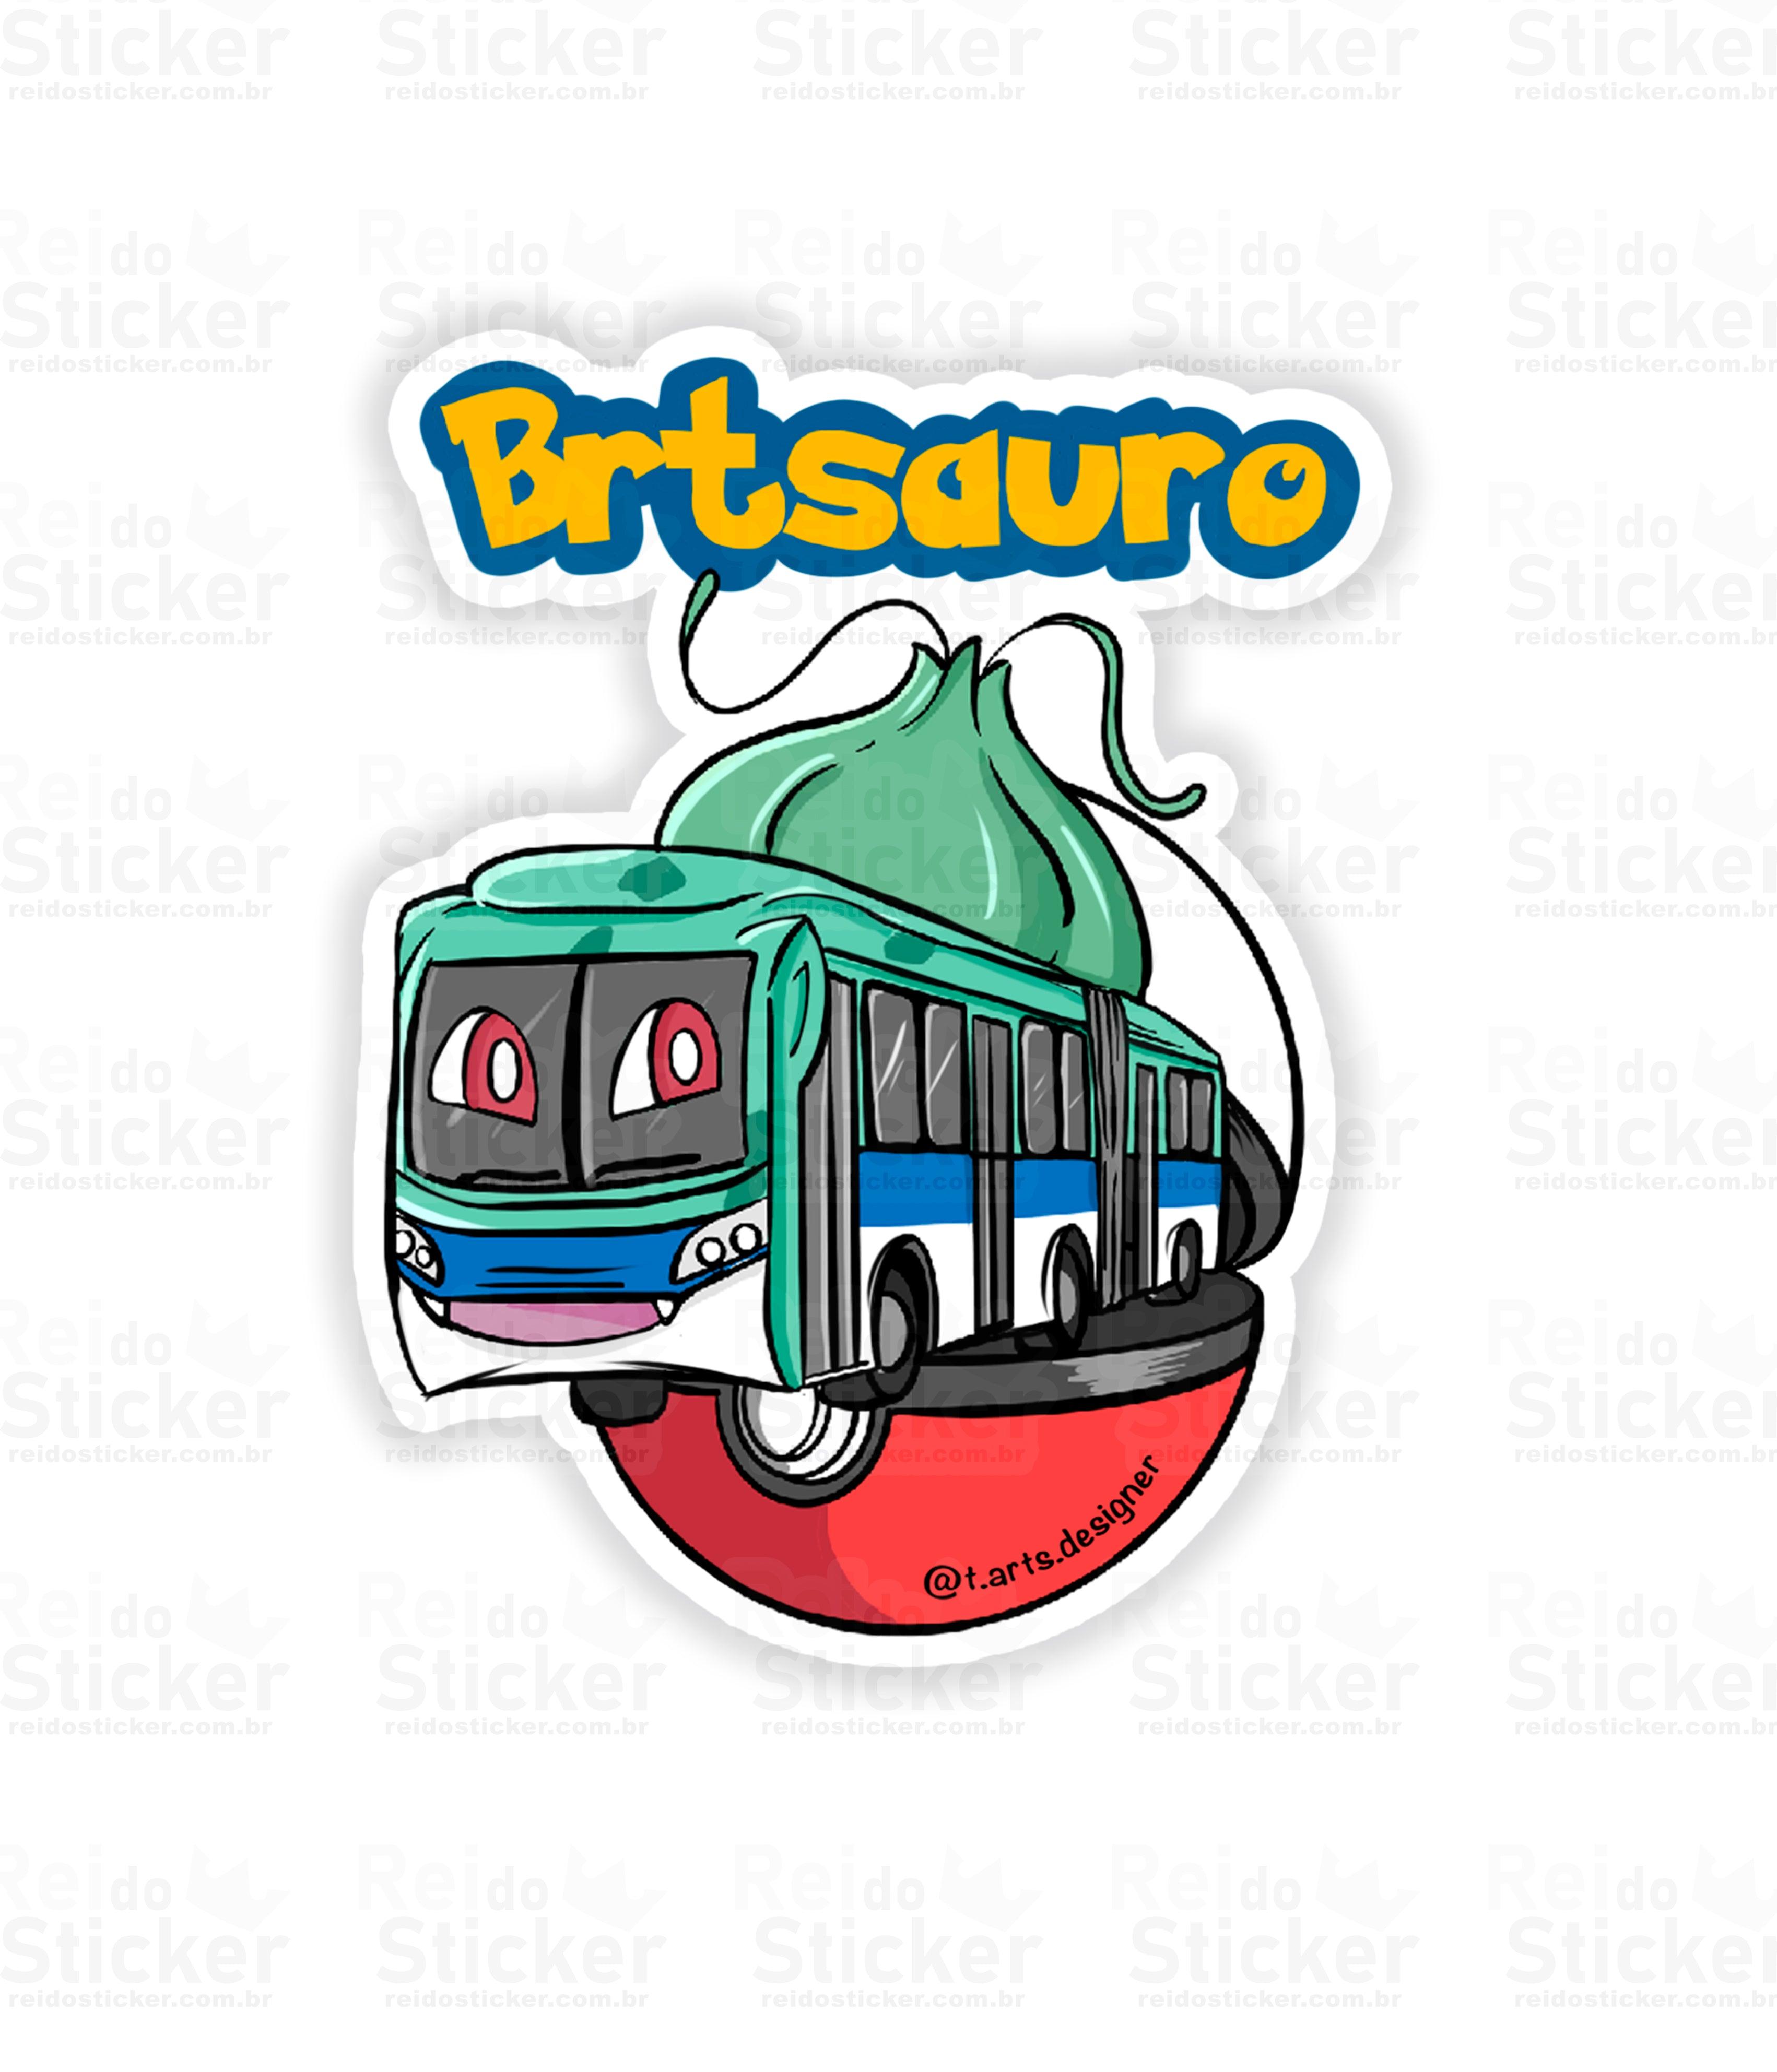 Brtsauro - Rei do Sticker